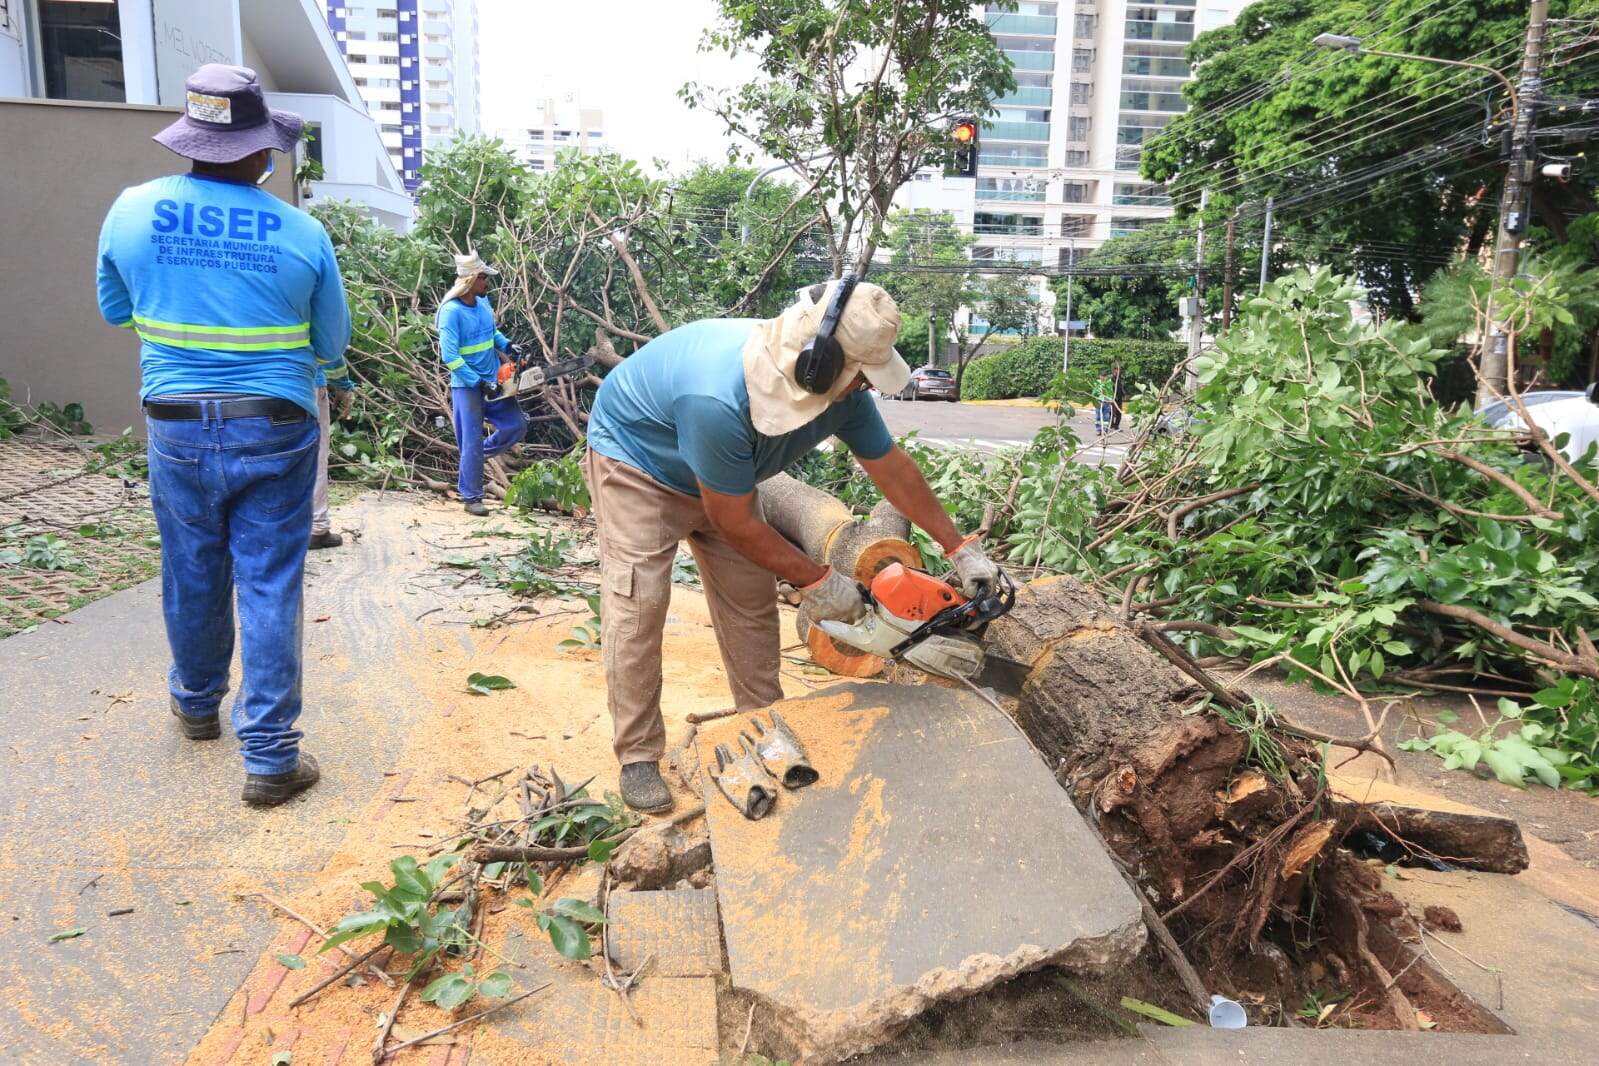 Quase 3 dias após temporal, equipes ainda trabalham na remoção de árvores